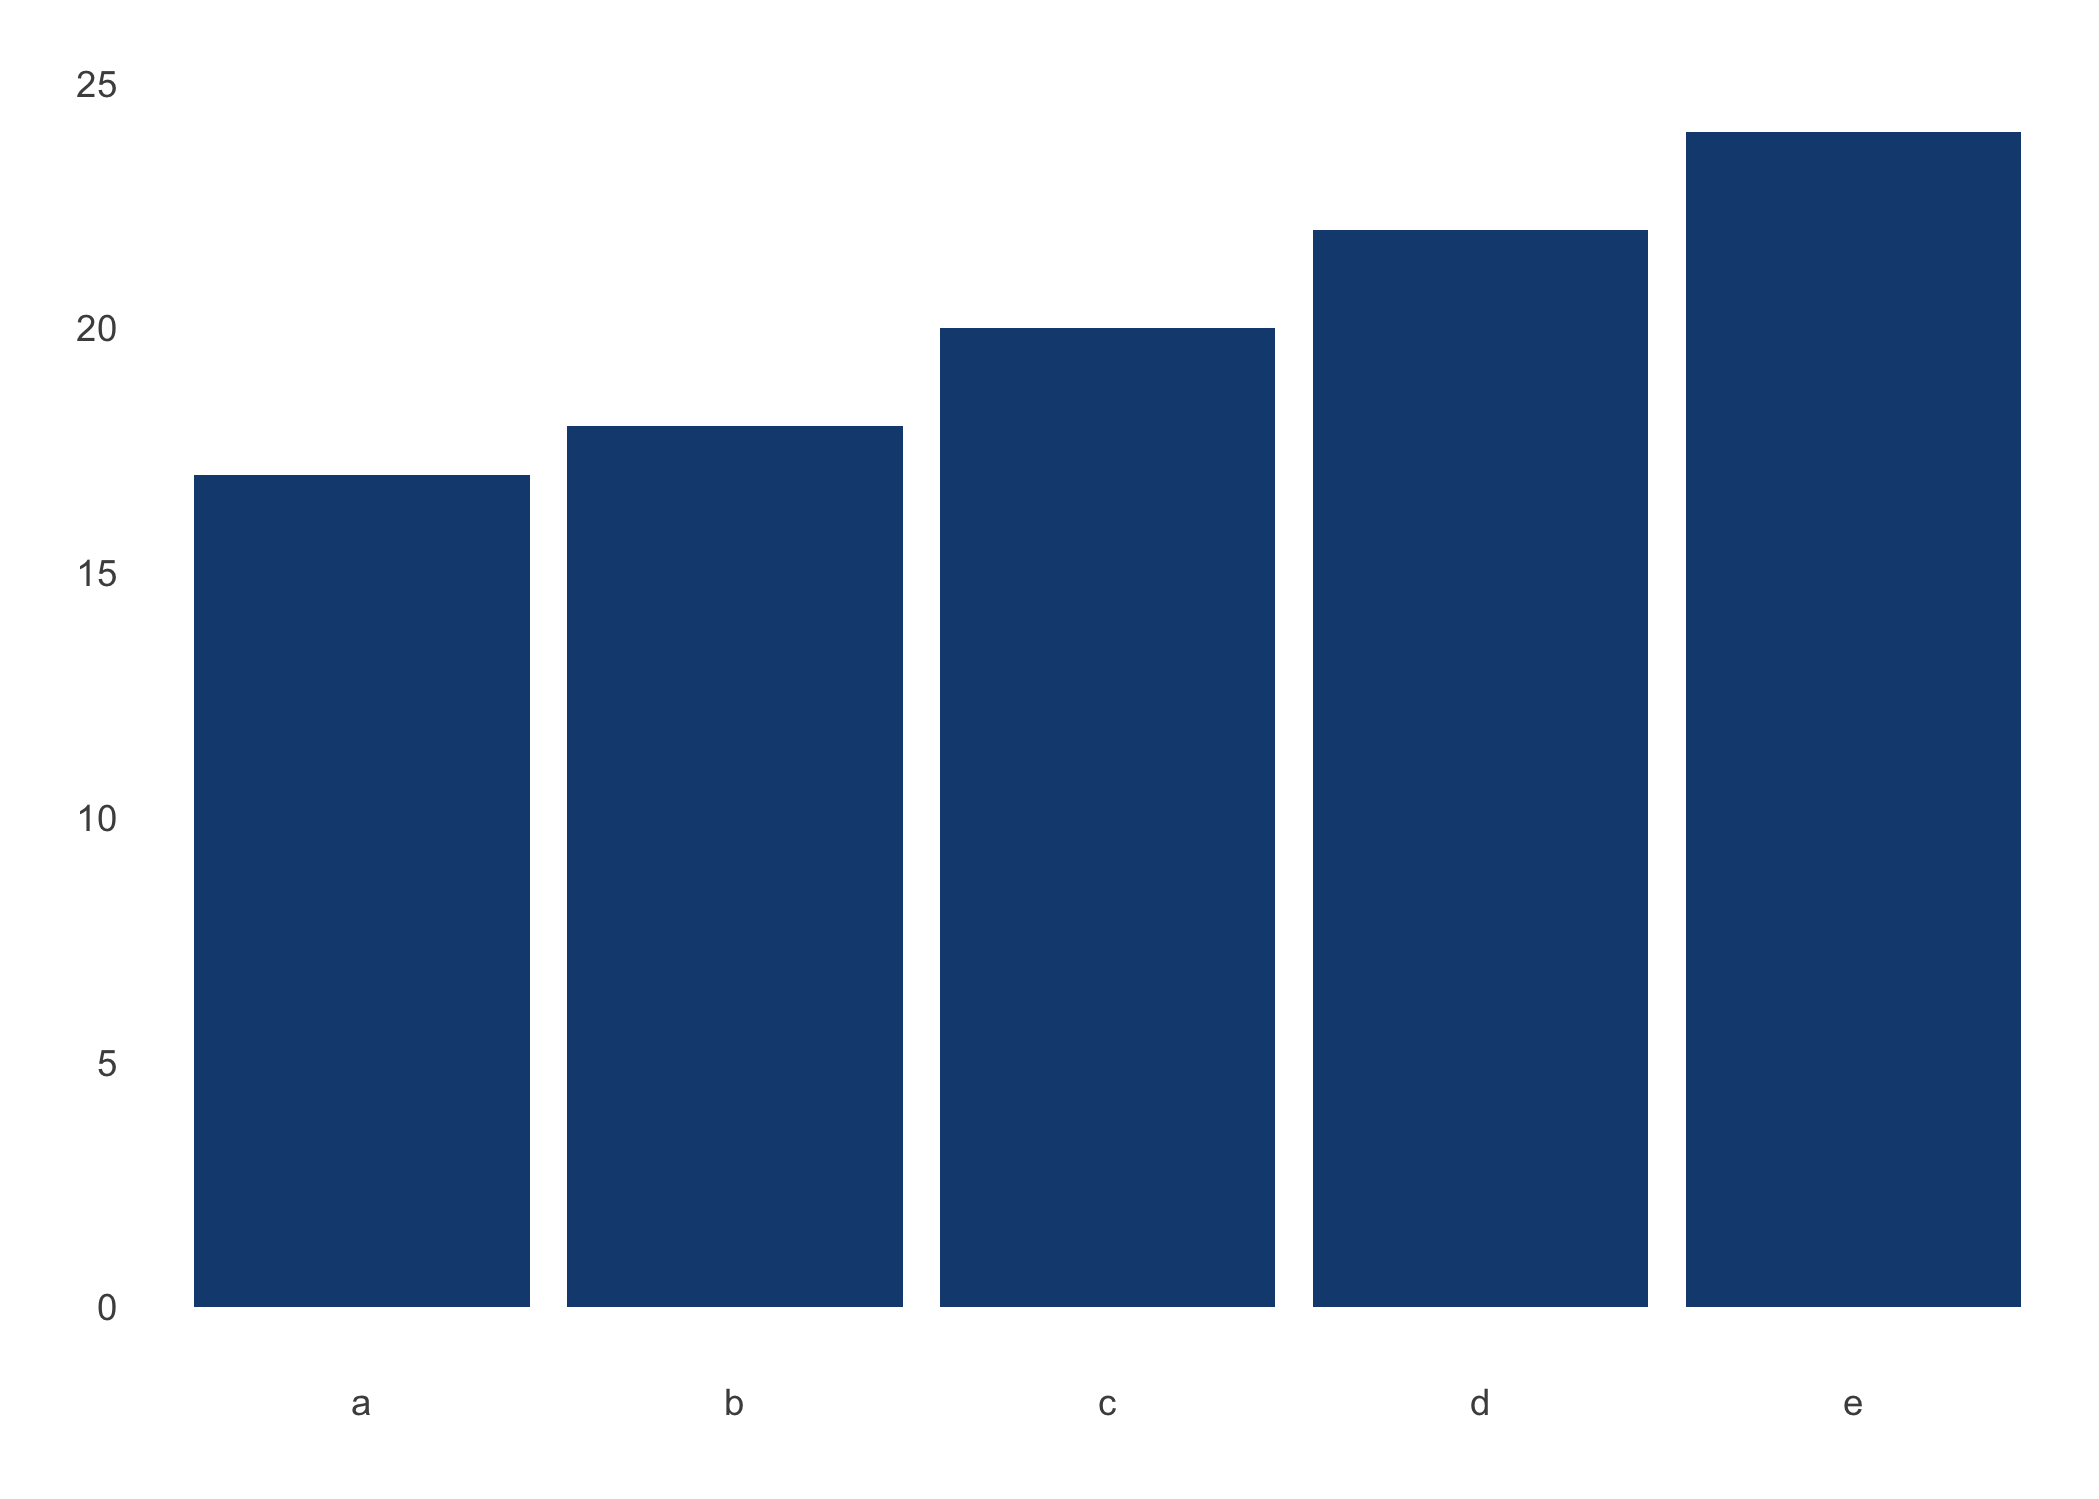 Gráfico de barras como alternativa al gráfico de pastel (se emplean los mismos datos del grafico de pastel)